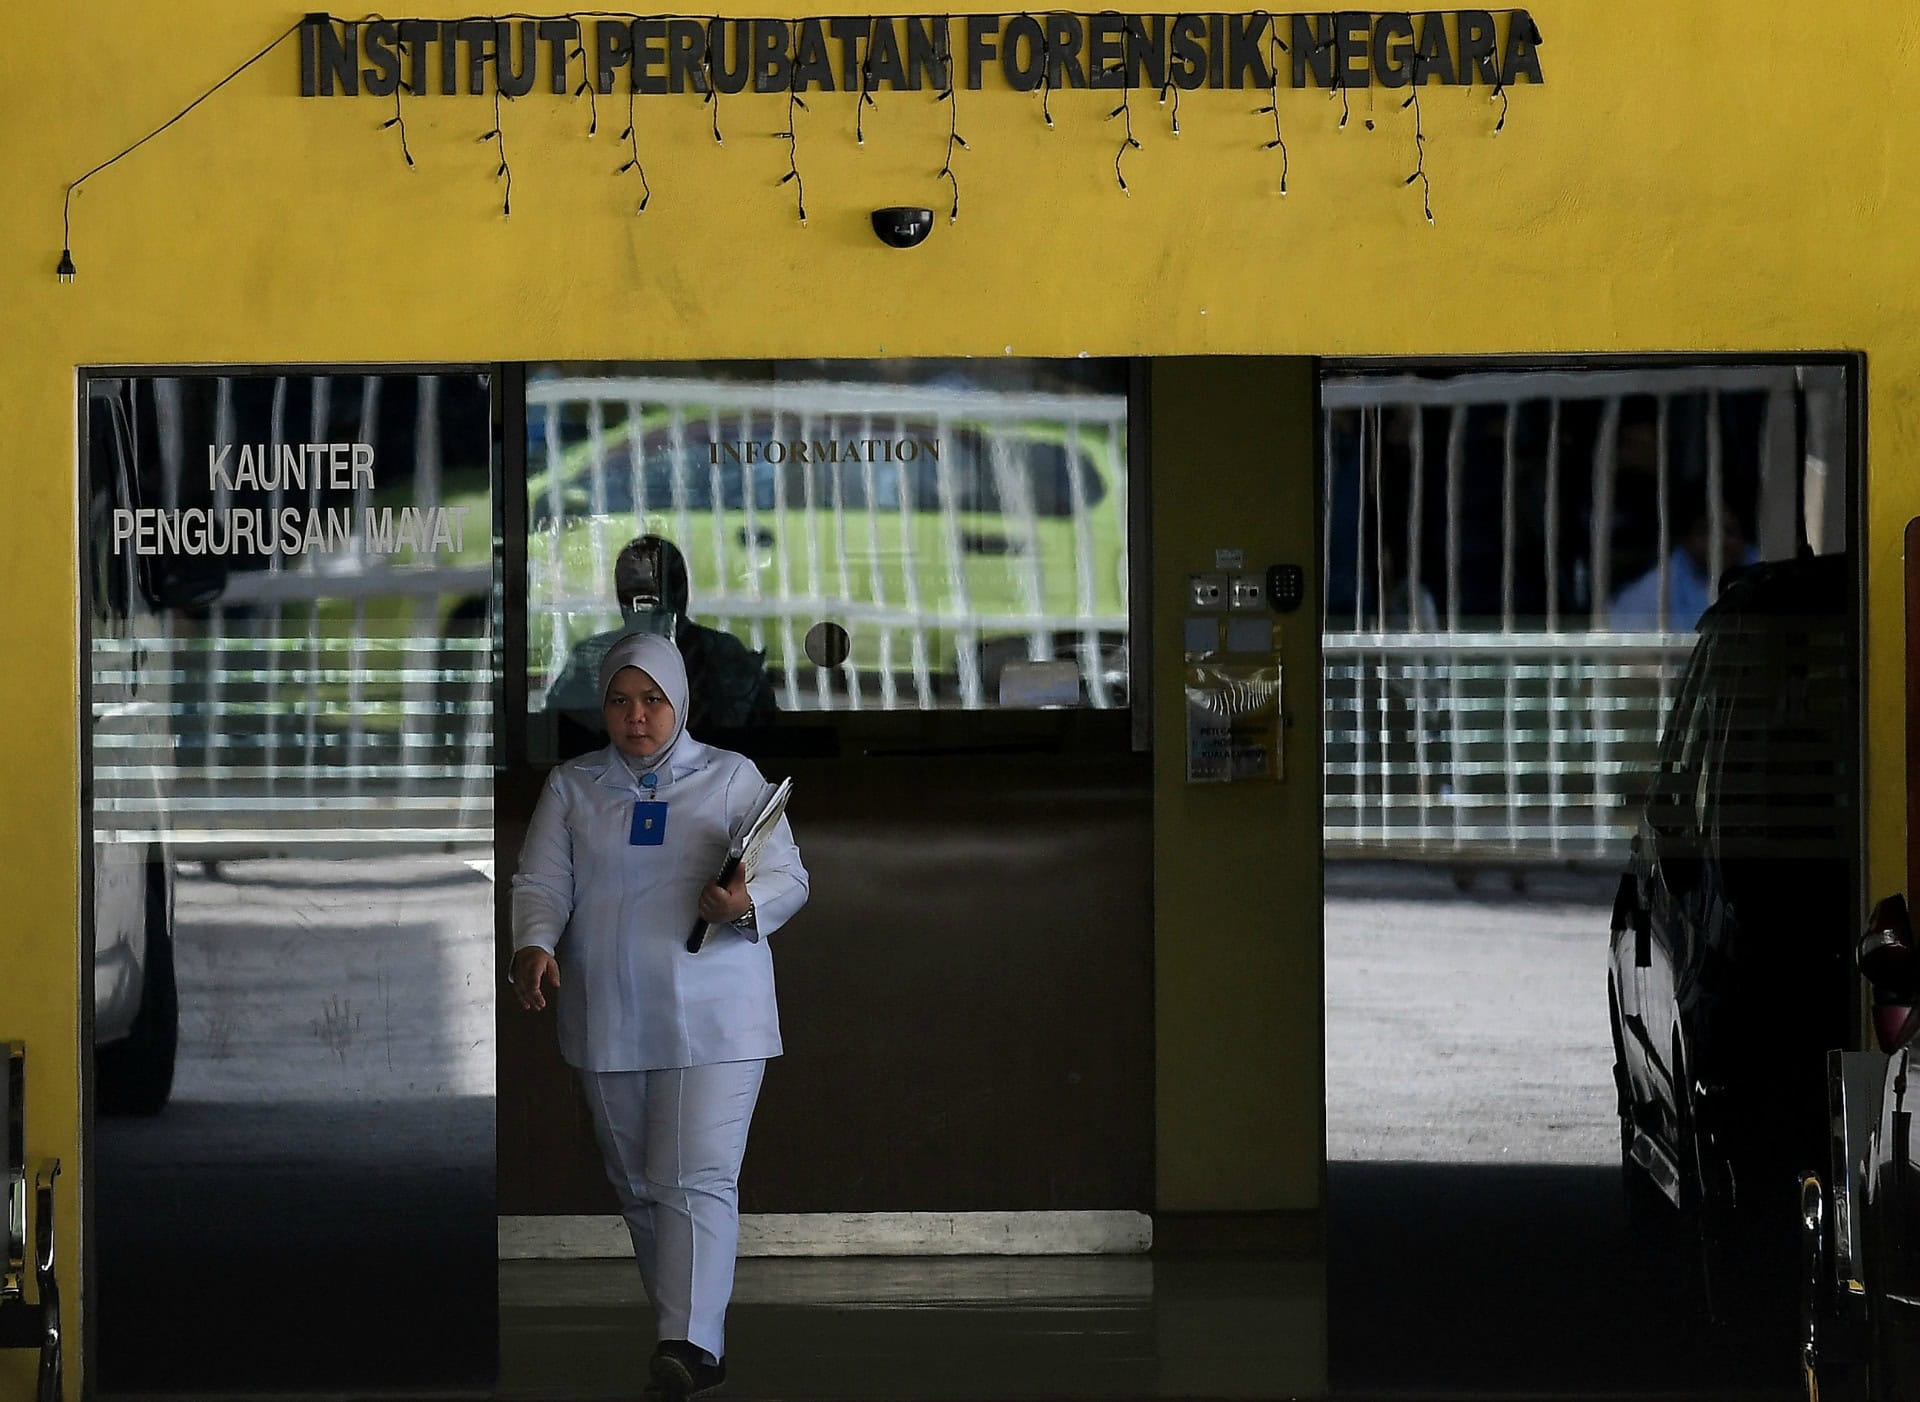 Malasia exige muestras de ADN a la familia de Kim Jong-nam para repatriar su cuerpo